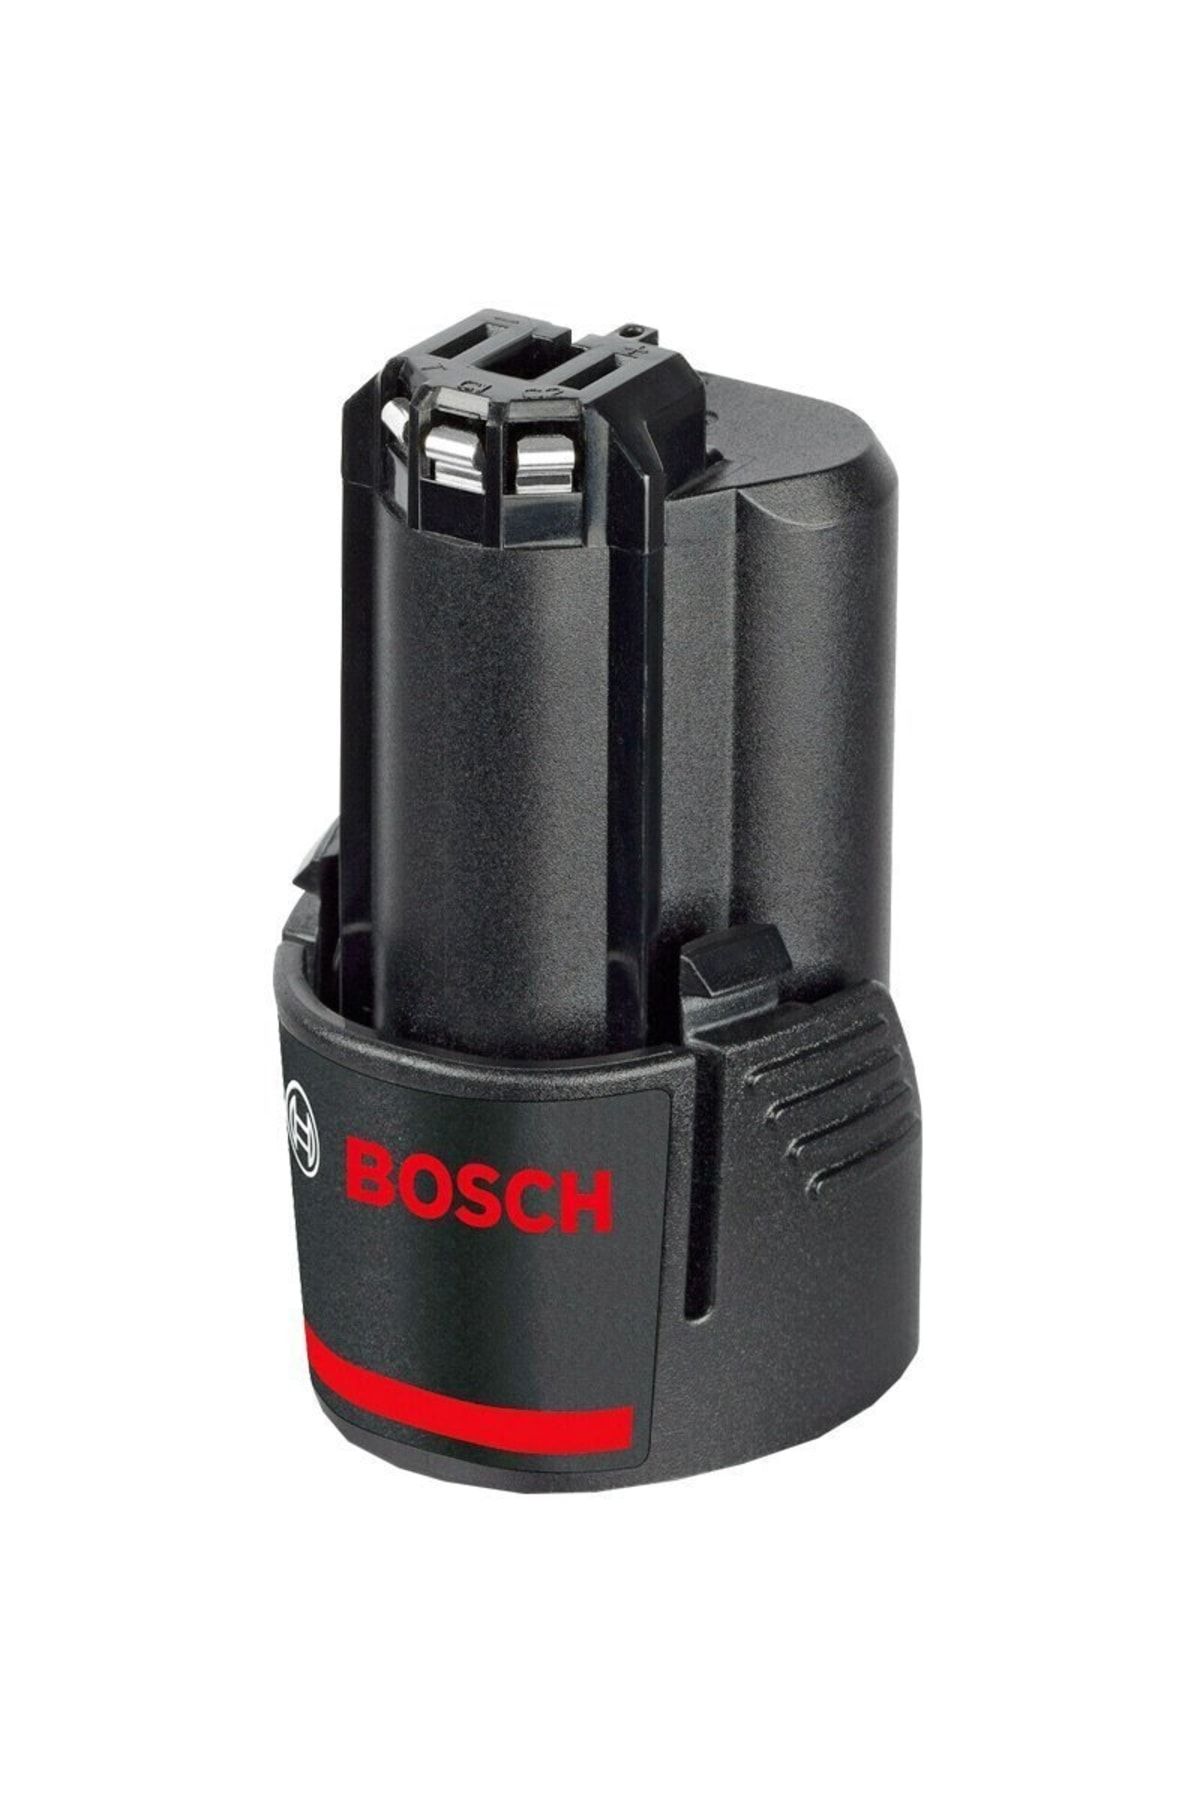 Bosch - 12 V 2,0 Ah Sd Li-ıon Ecp Düz Akü